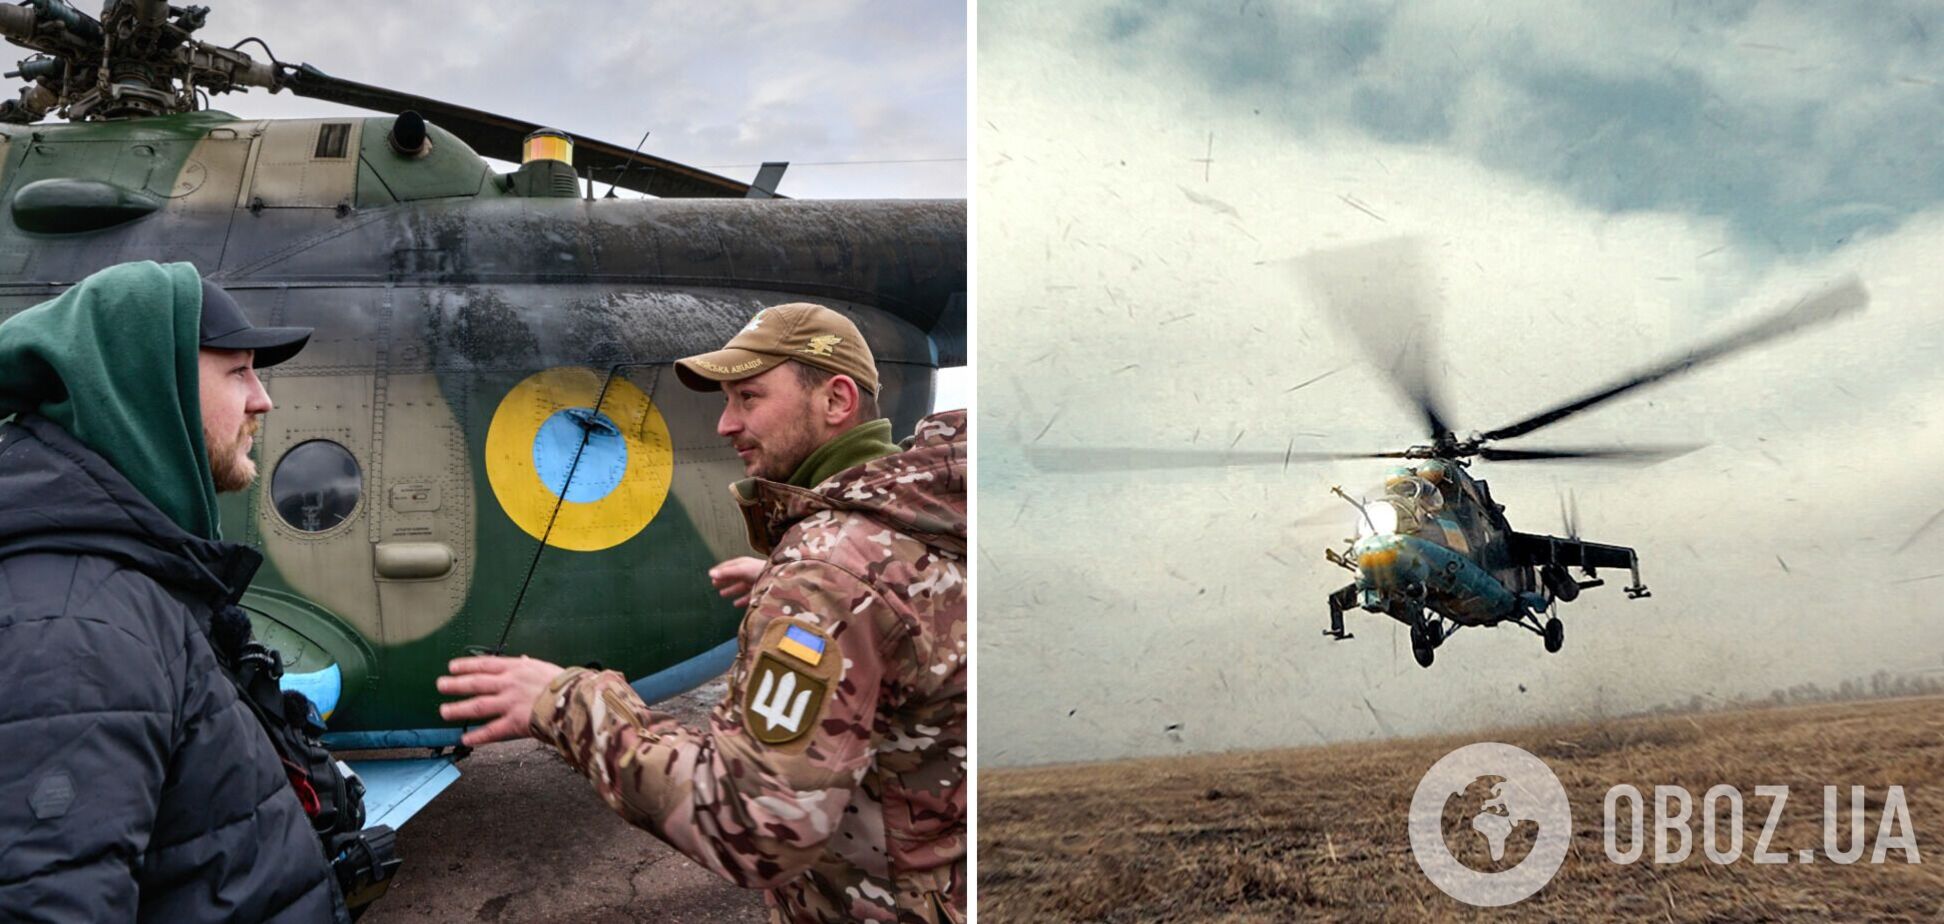 'Чем больше учишься, тем дольше живешь': экипаж вертолета ВСУ рассказал об 'охоте' на врага и главных рисках